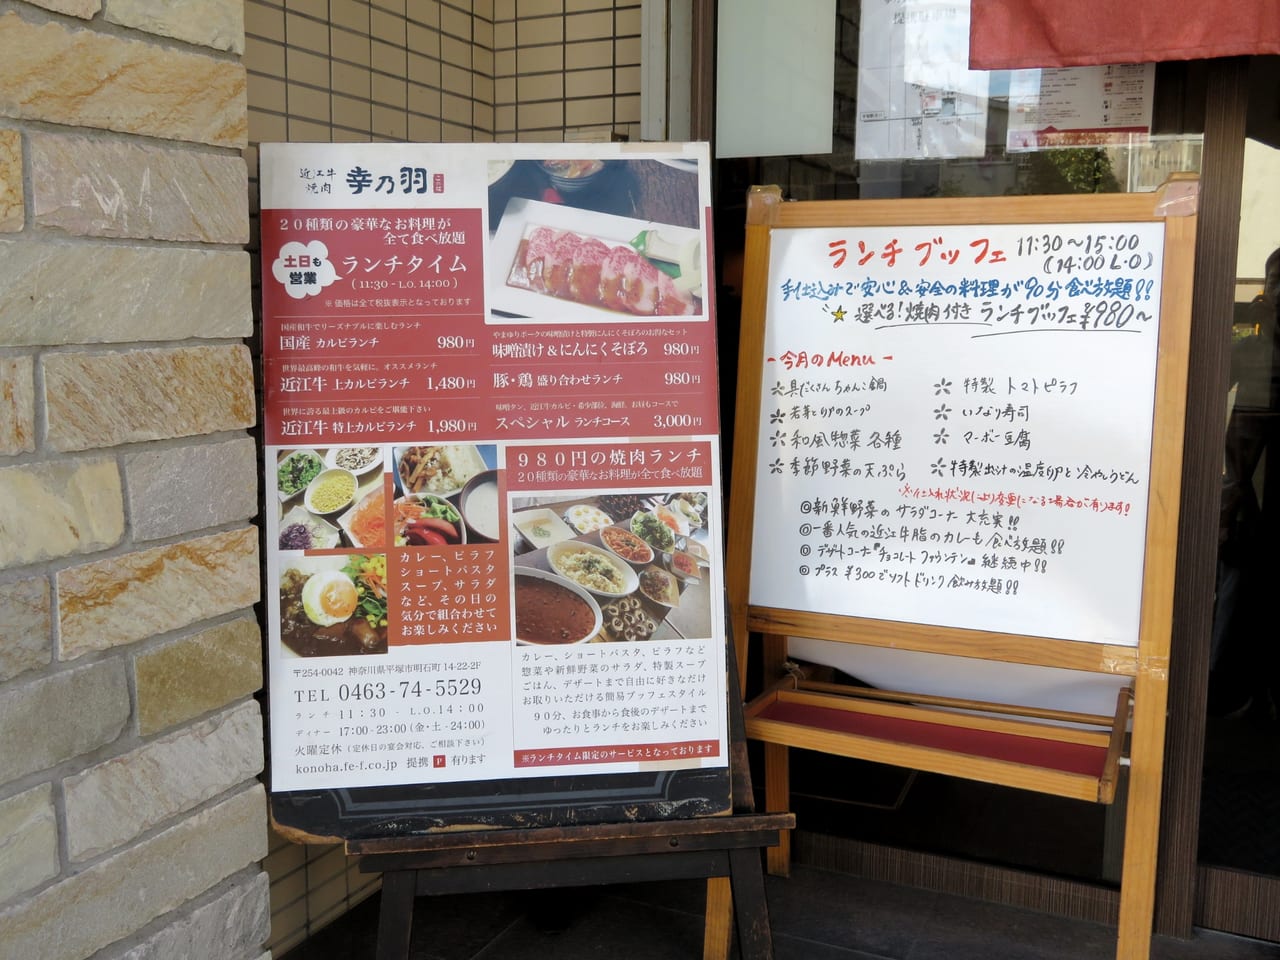 7周年記念ランチが楽しめる「近江牛 焼肉 幸乃羽」